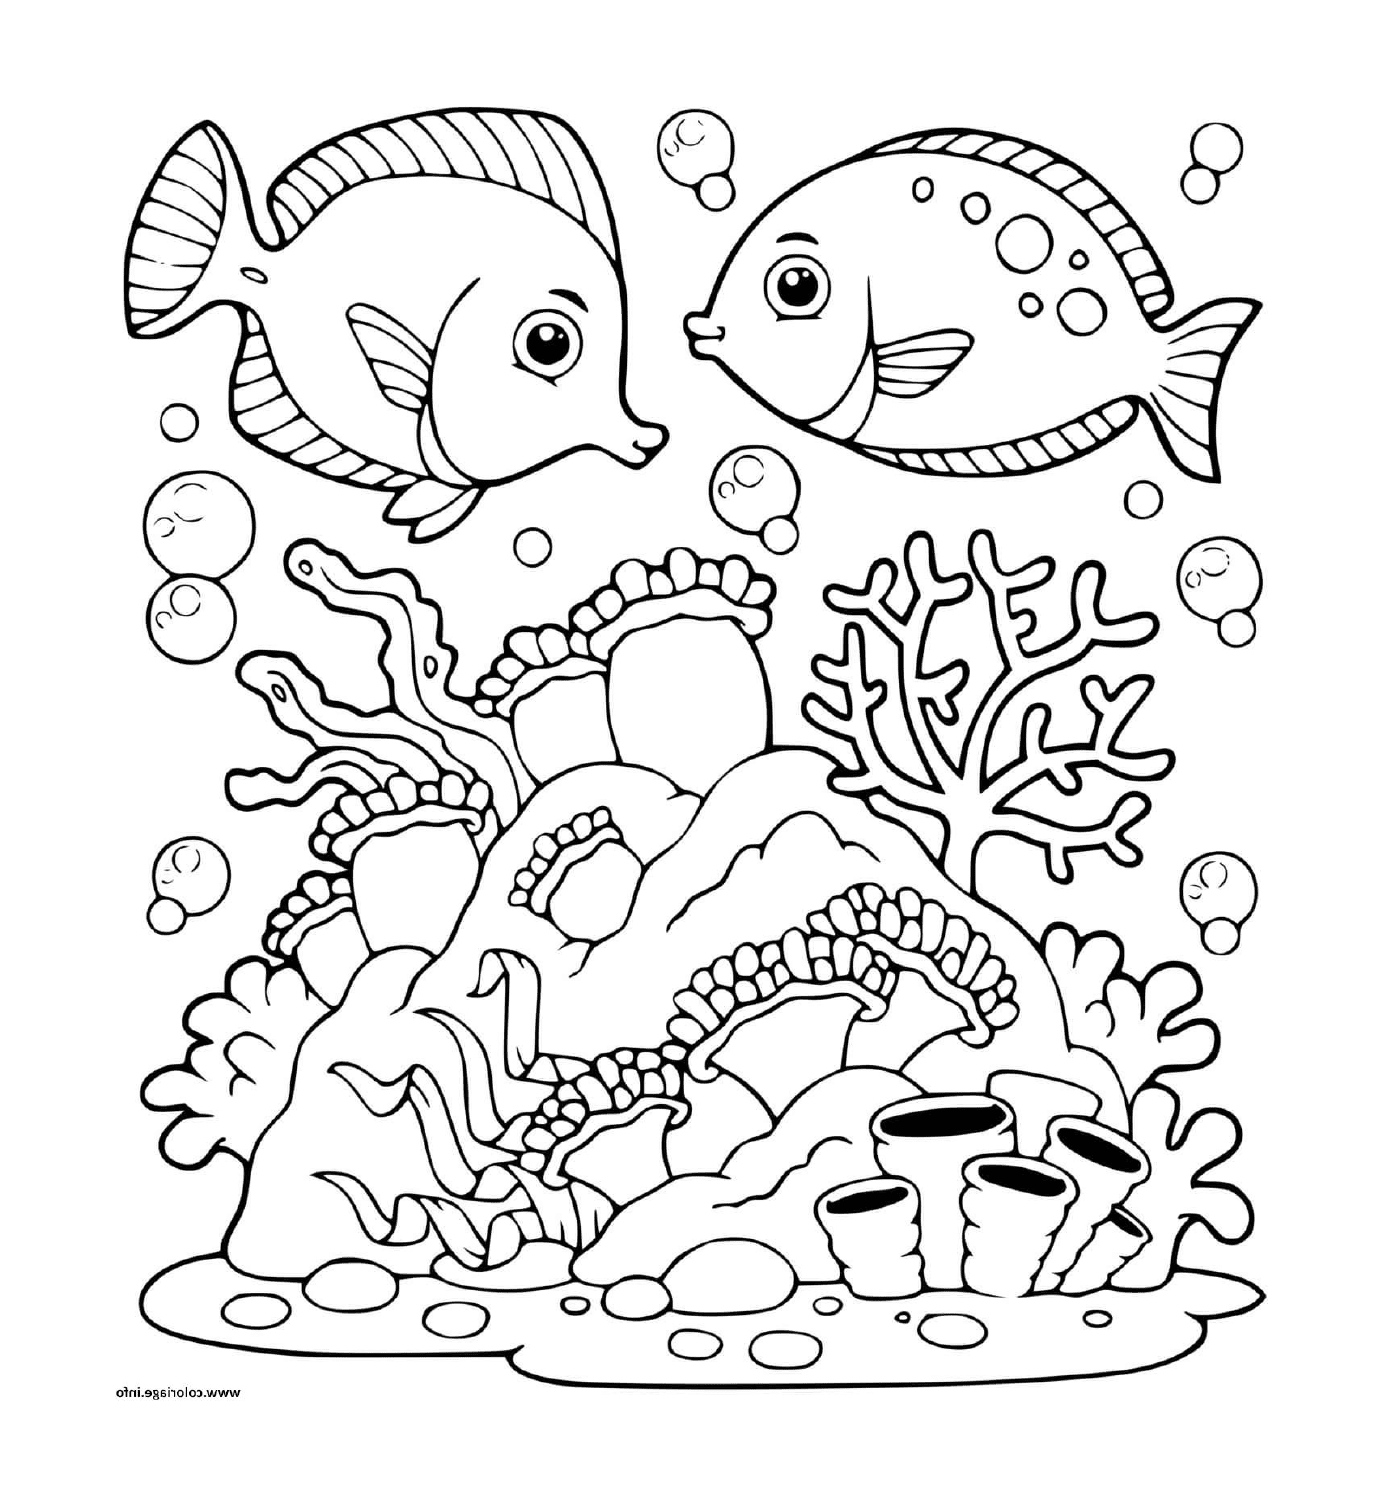  दो मछली 